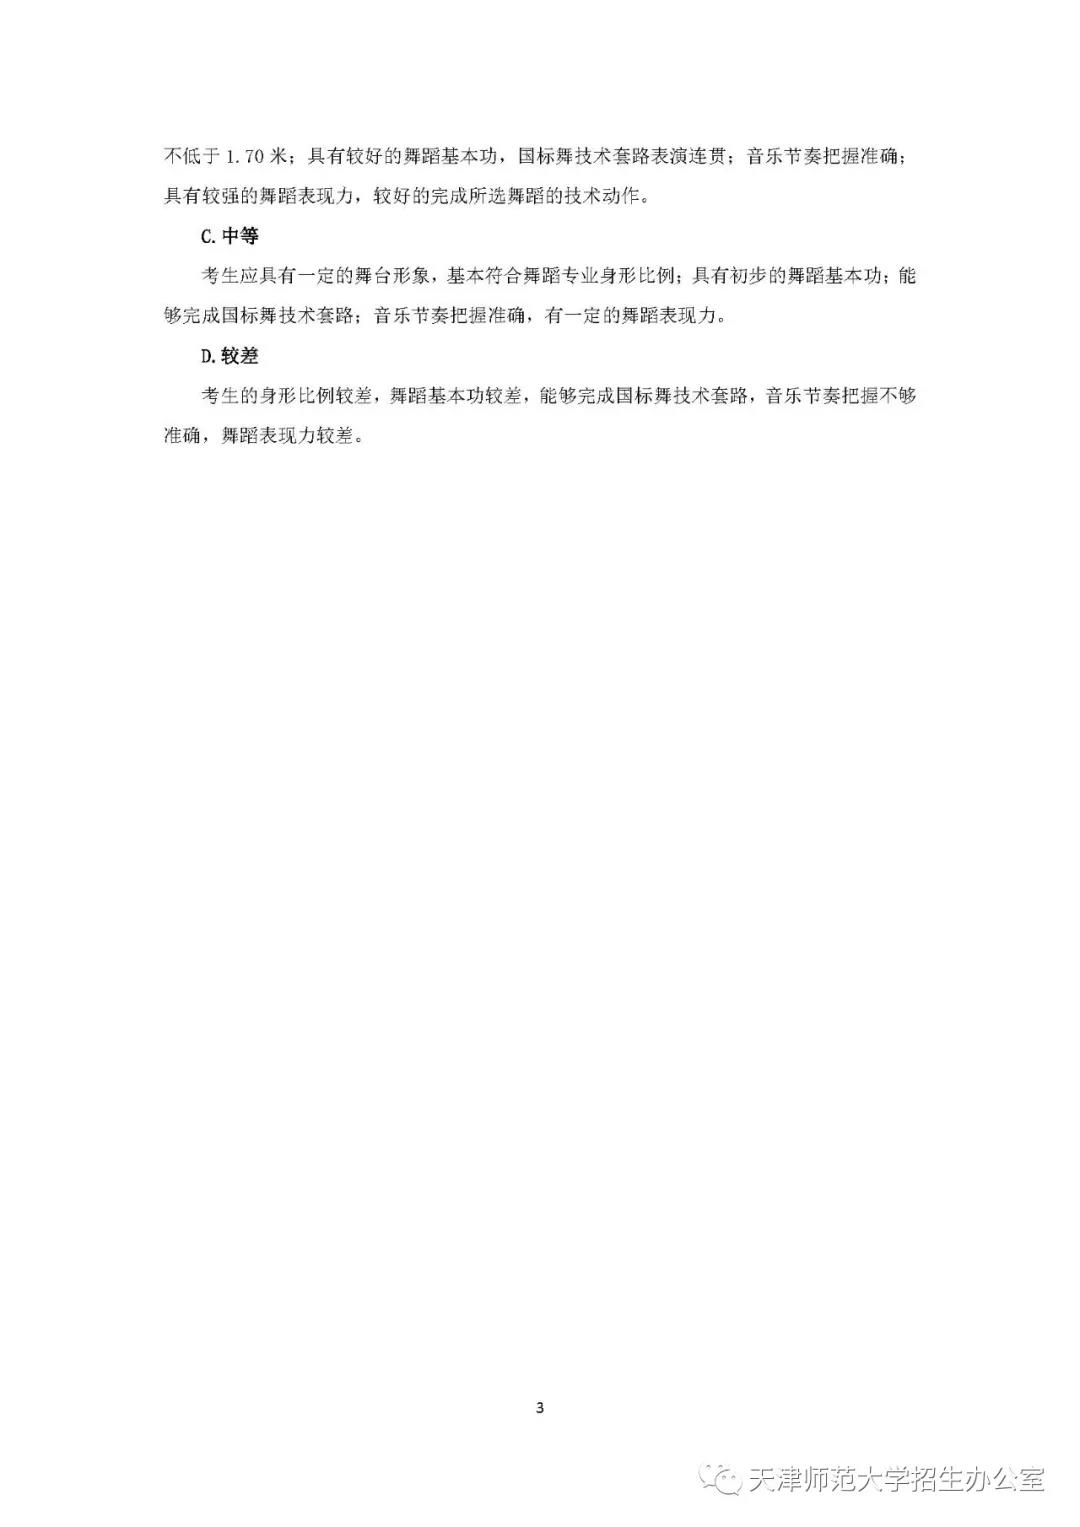 天津师范大学2020年艺术类专业考试要求和说明